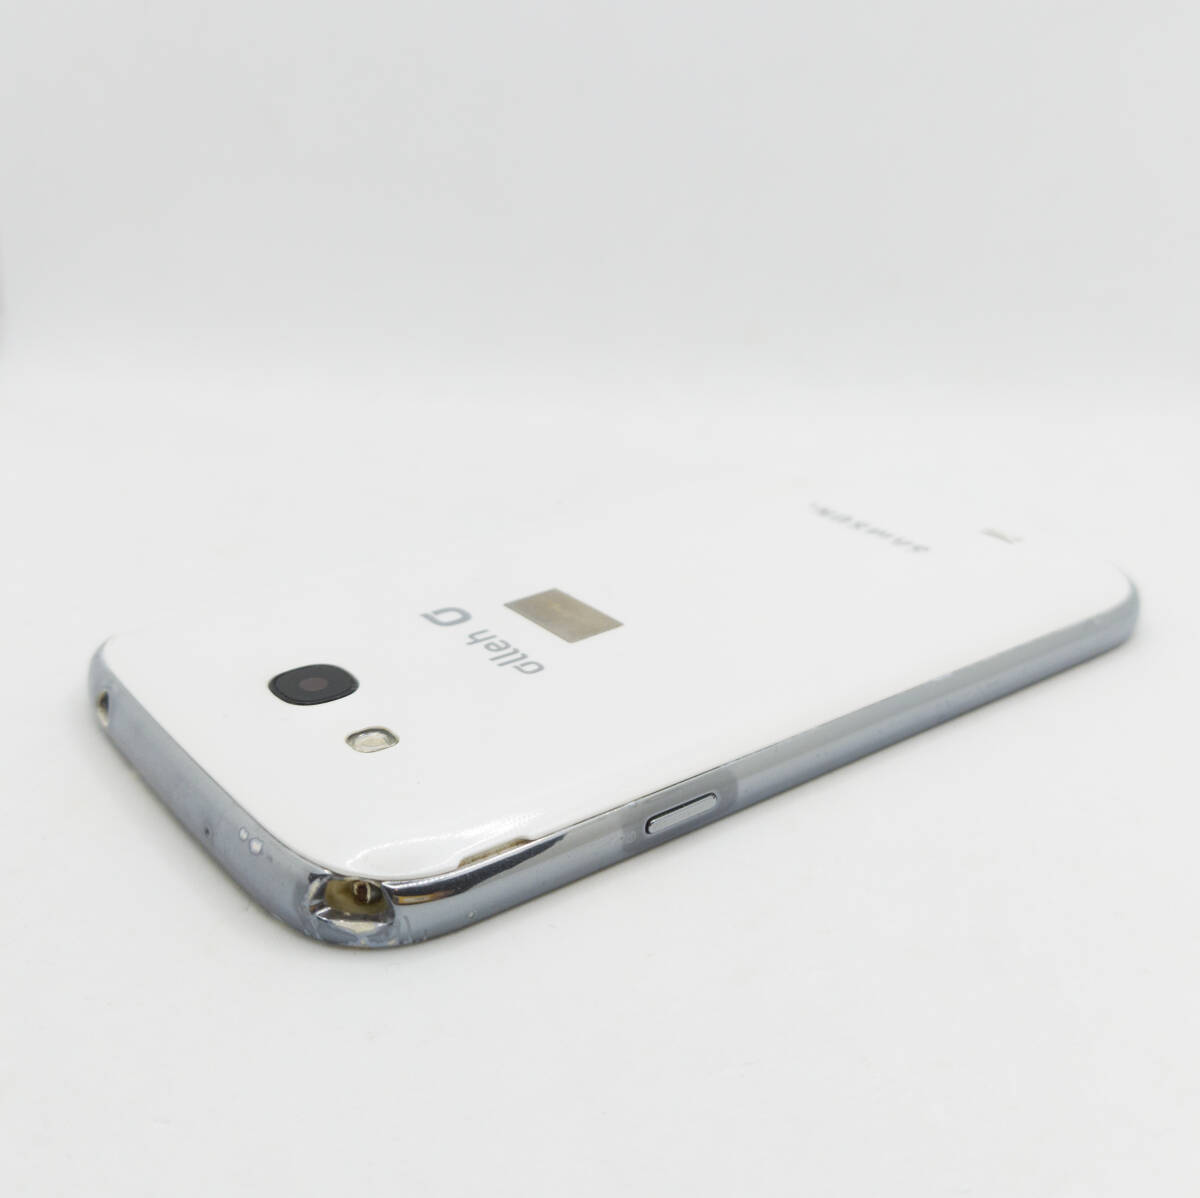 Samsung Galaxy Grand SHV-E270K サムスン ギャラクシー スマートフォン スマホ Android アンドロイド 携帯電話 本体 #ST-02935の画像5